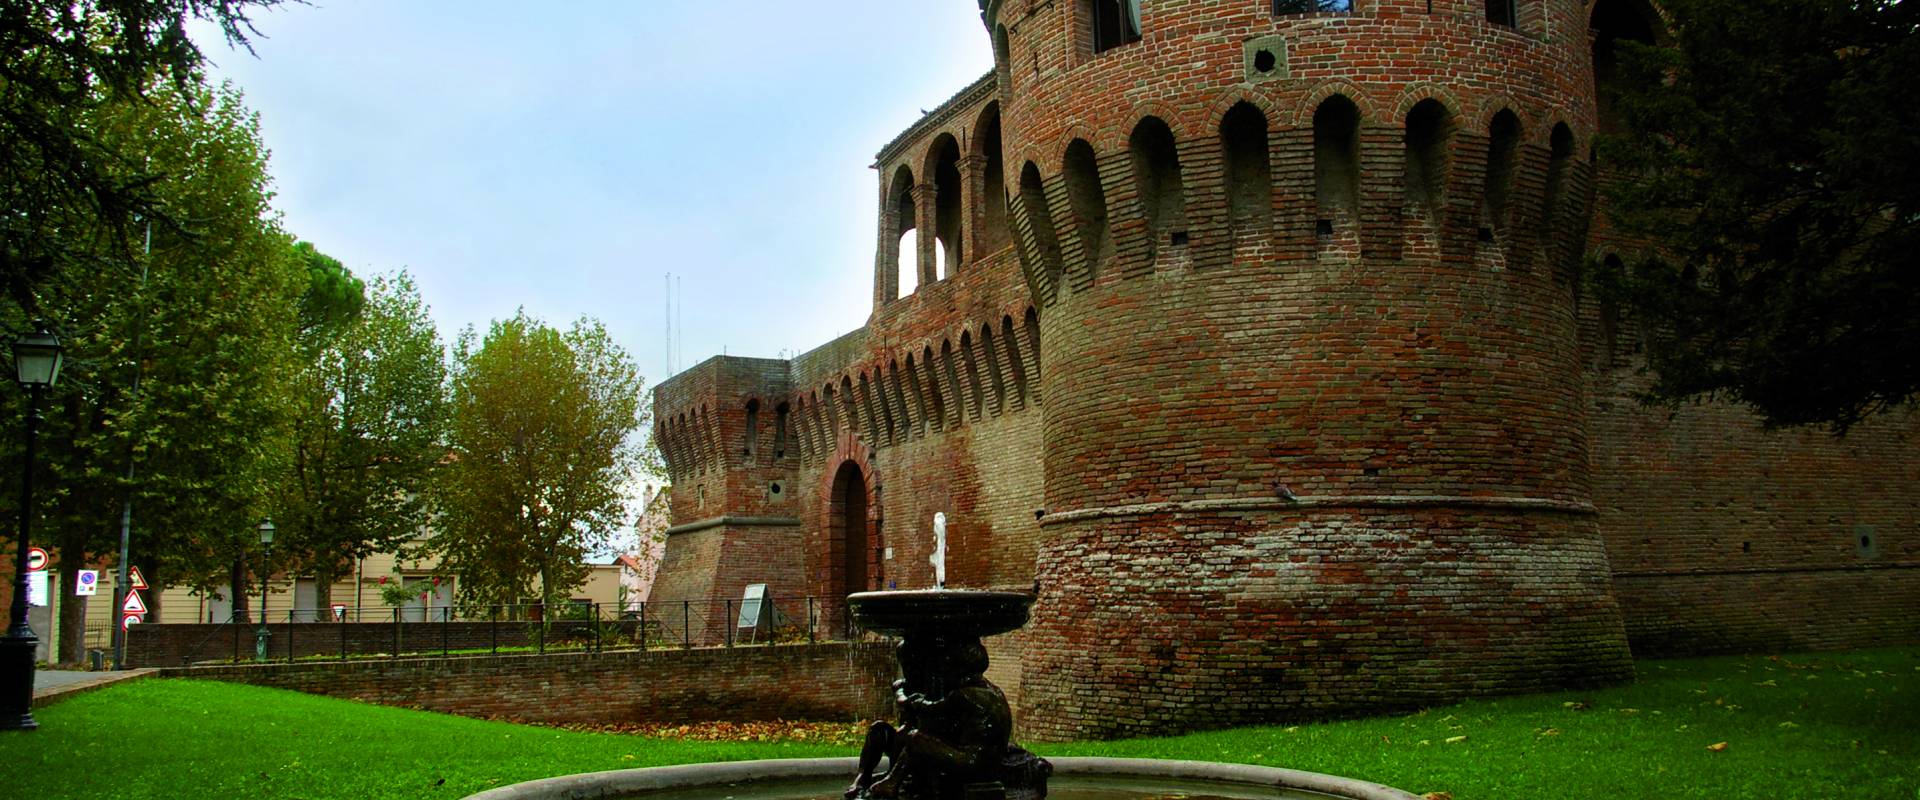 Rocca di Bagnara di Romagna foto di Ercolanc